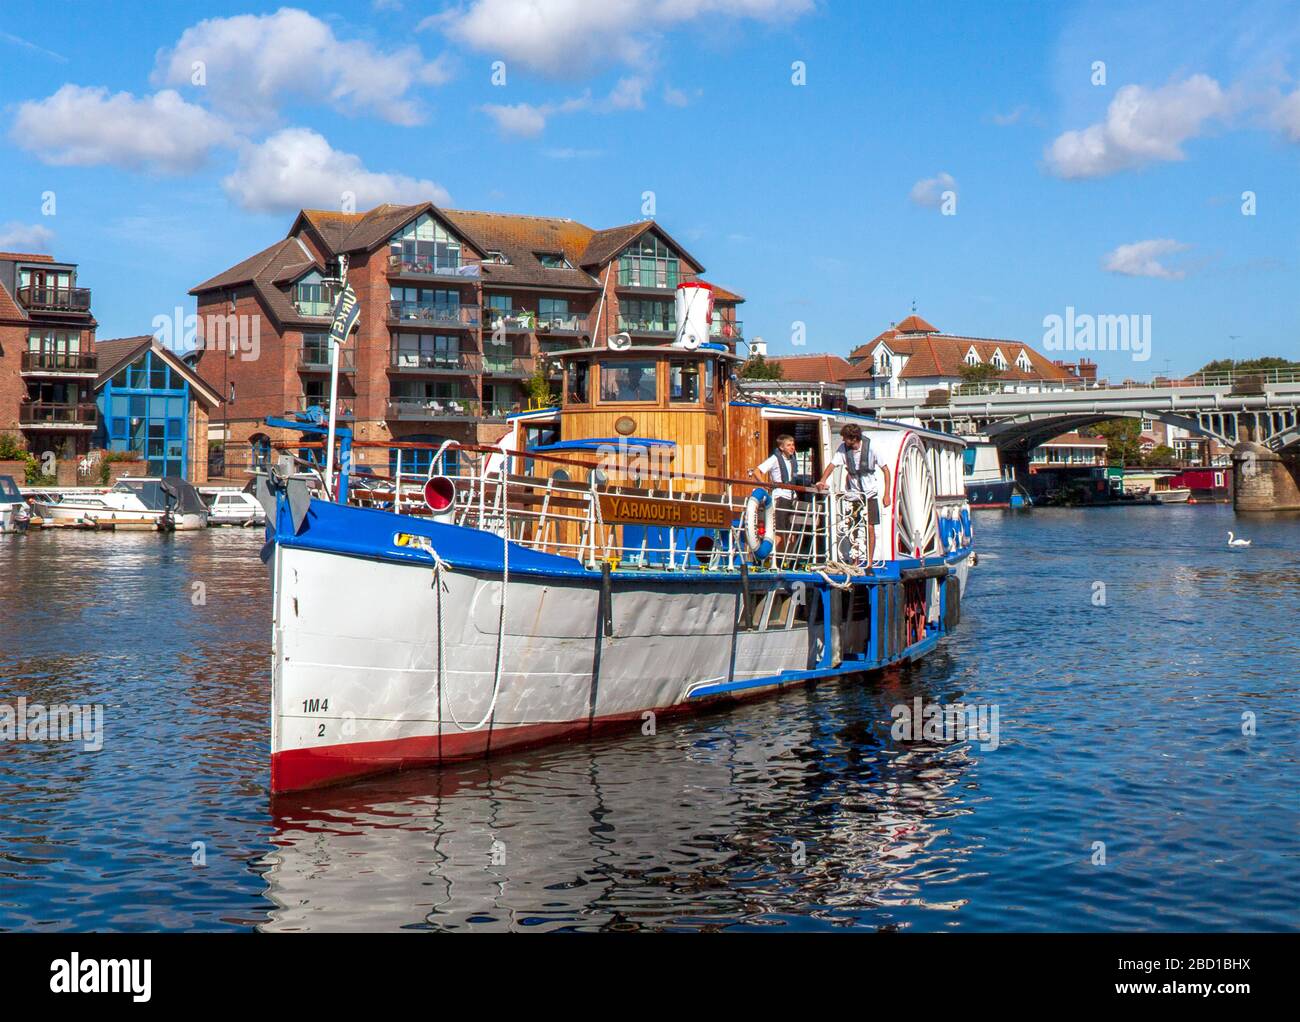 Die Yarmouth Belle nähert sich Turk's Wharf, Kingston upon Thames, England. Typisch für die Boote, die Passagiere auf der Themse befliegen. Stockfoto